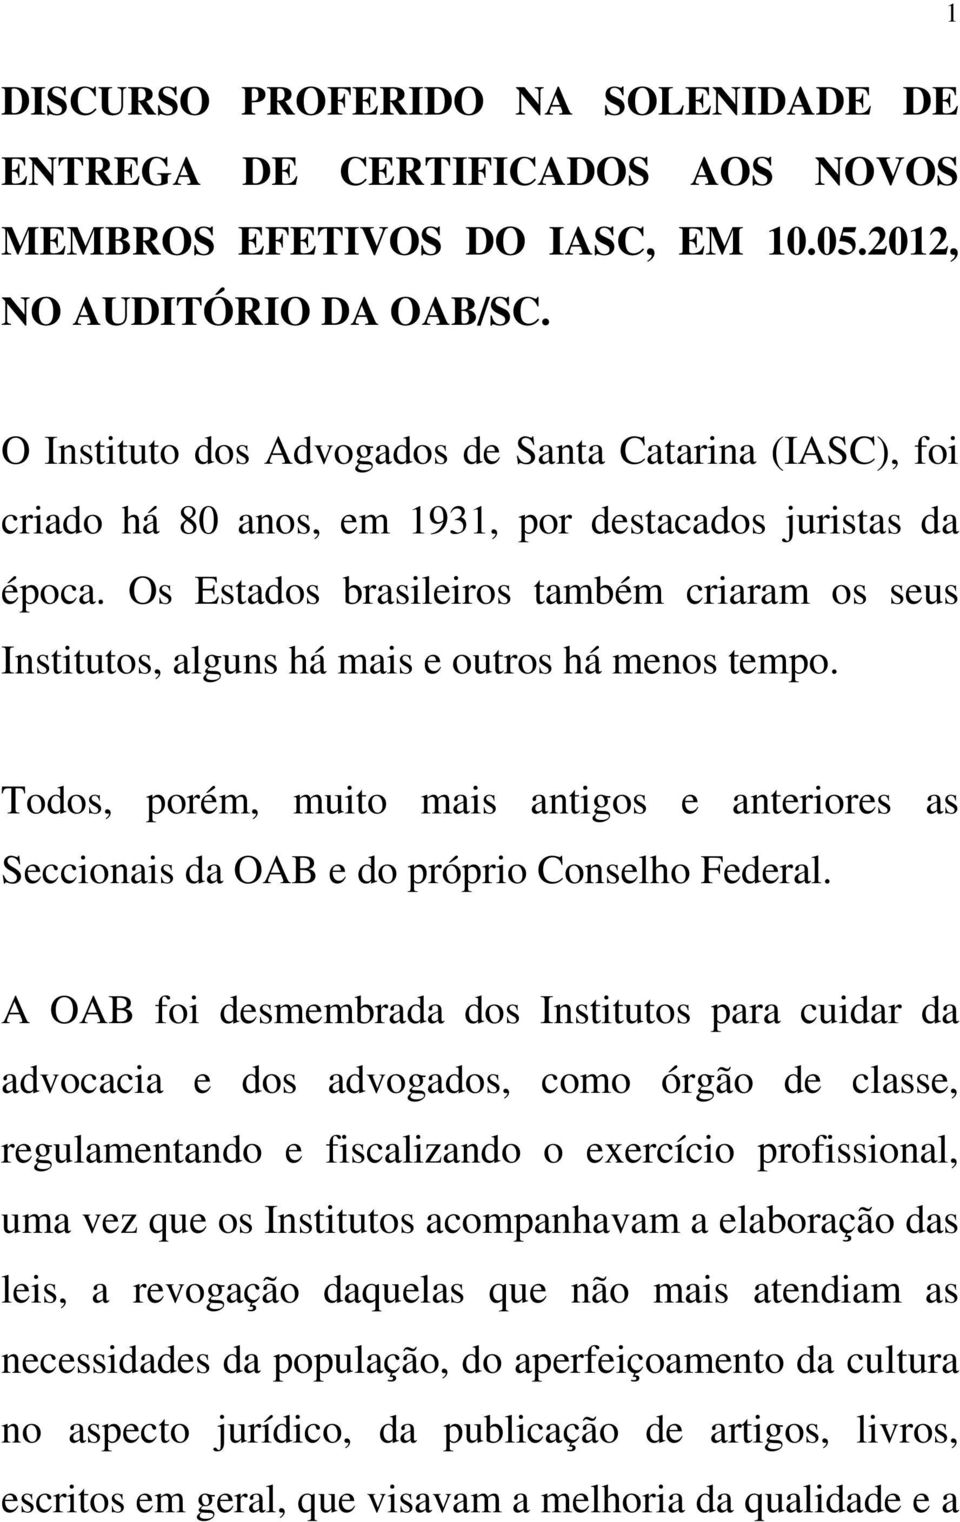 Os Estados brasileiros também criaram os seus Institutos, alguns há mais e outros há menos tempo. Todos, porém, muito mais antigos e anteriores as Seccionais da OAB e do próprio Conselho Federal.